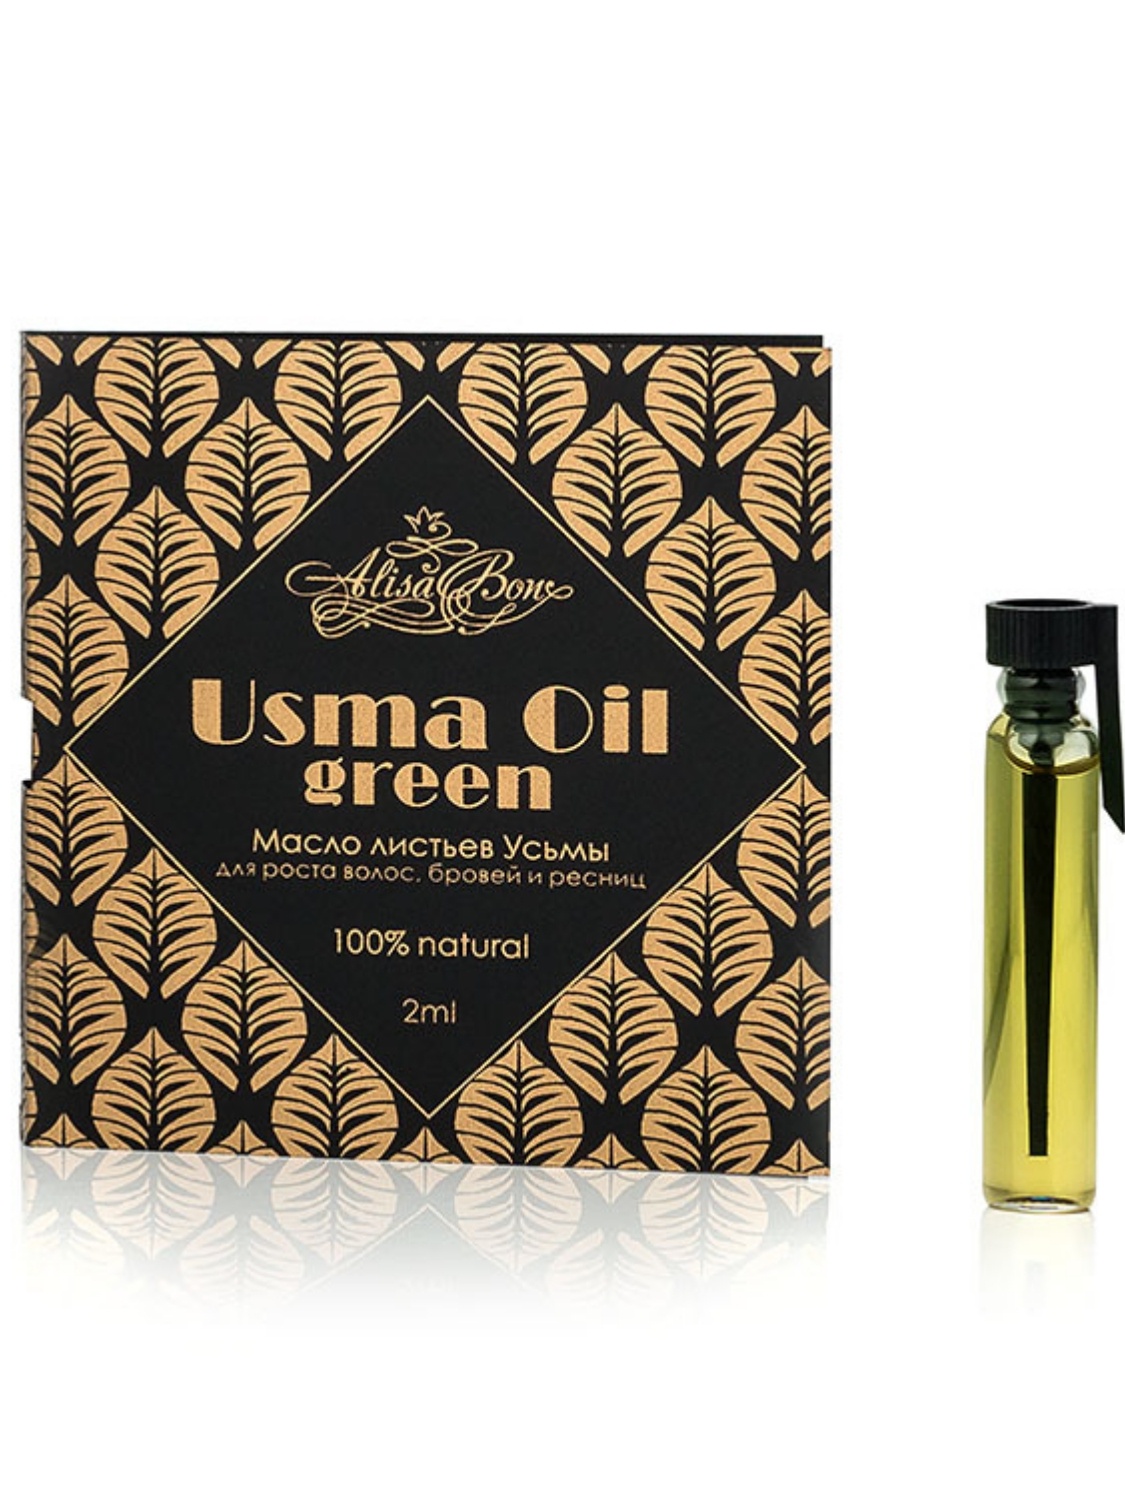 фото Масло для волос Alisa Bon из листьев усьмы для роста волос, бровей и ресниц "Usma Oil green"